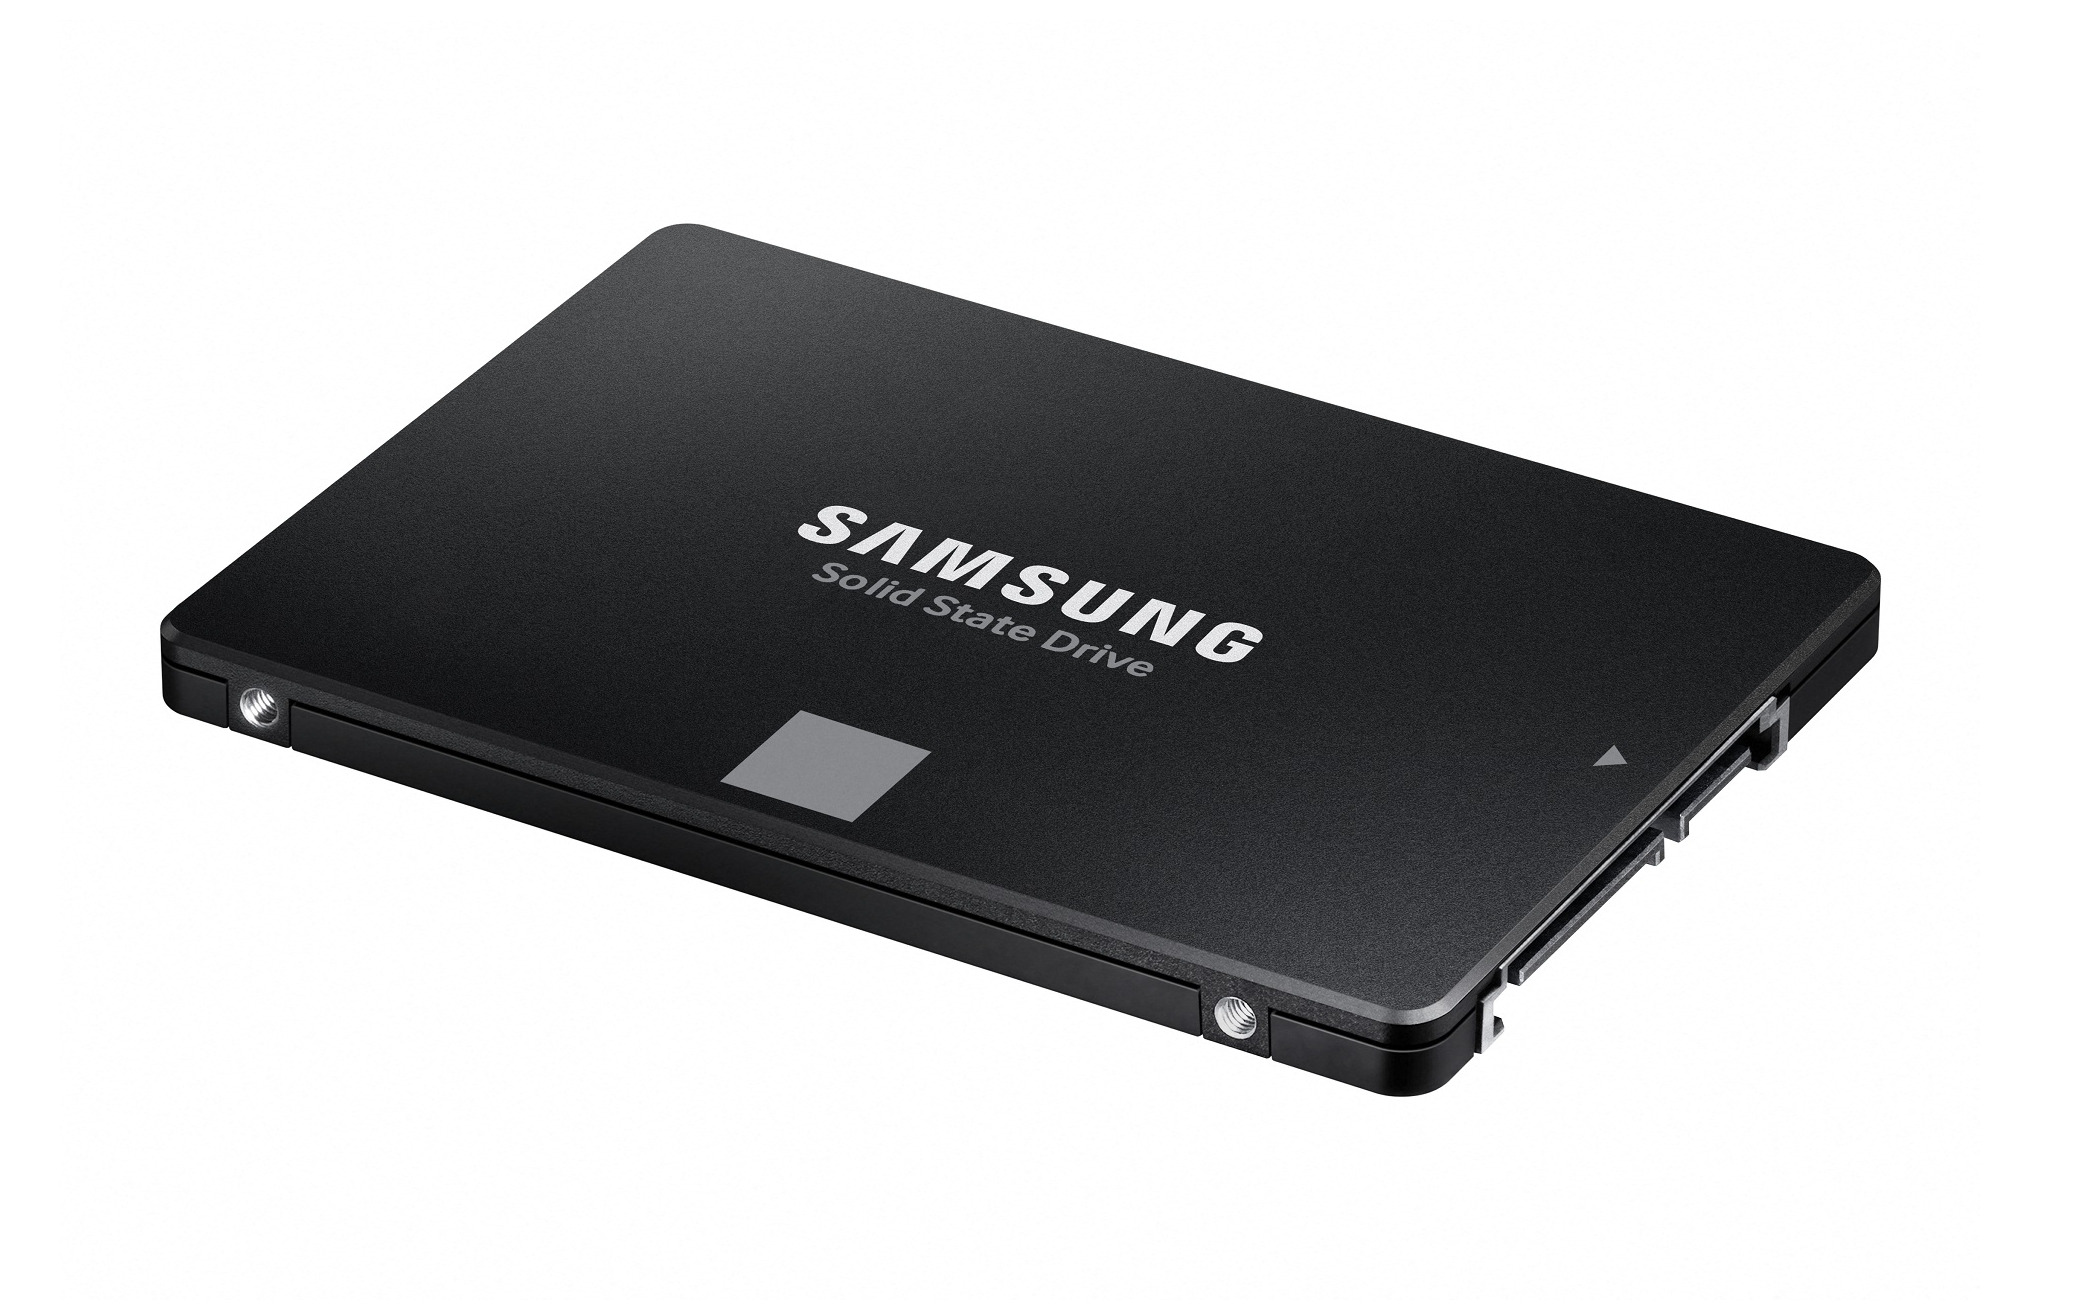 ? c?ng g?n trong SSD Samsung 870 EVO 500GB SATA III 6Gb/s 2.5 inch ( Ð?c 560MB/s - Ghi 530MB/s) - (MZ-77E500BW)